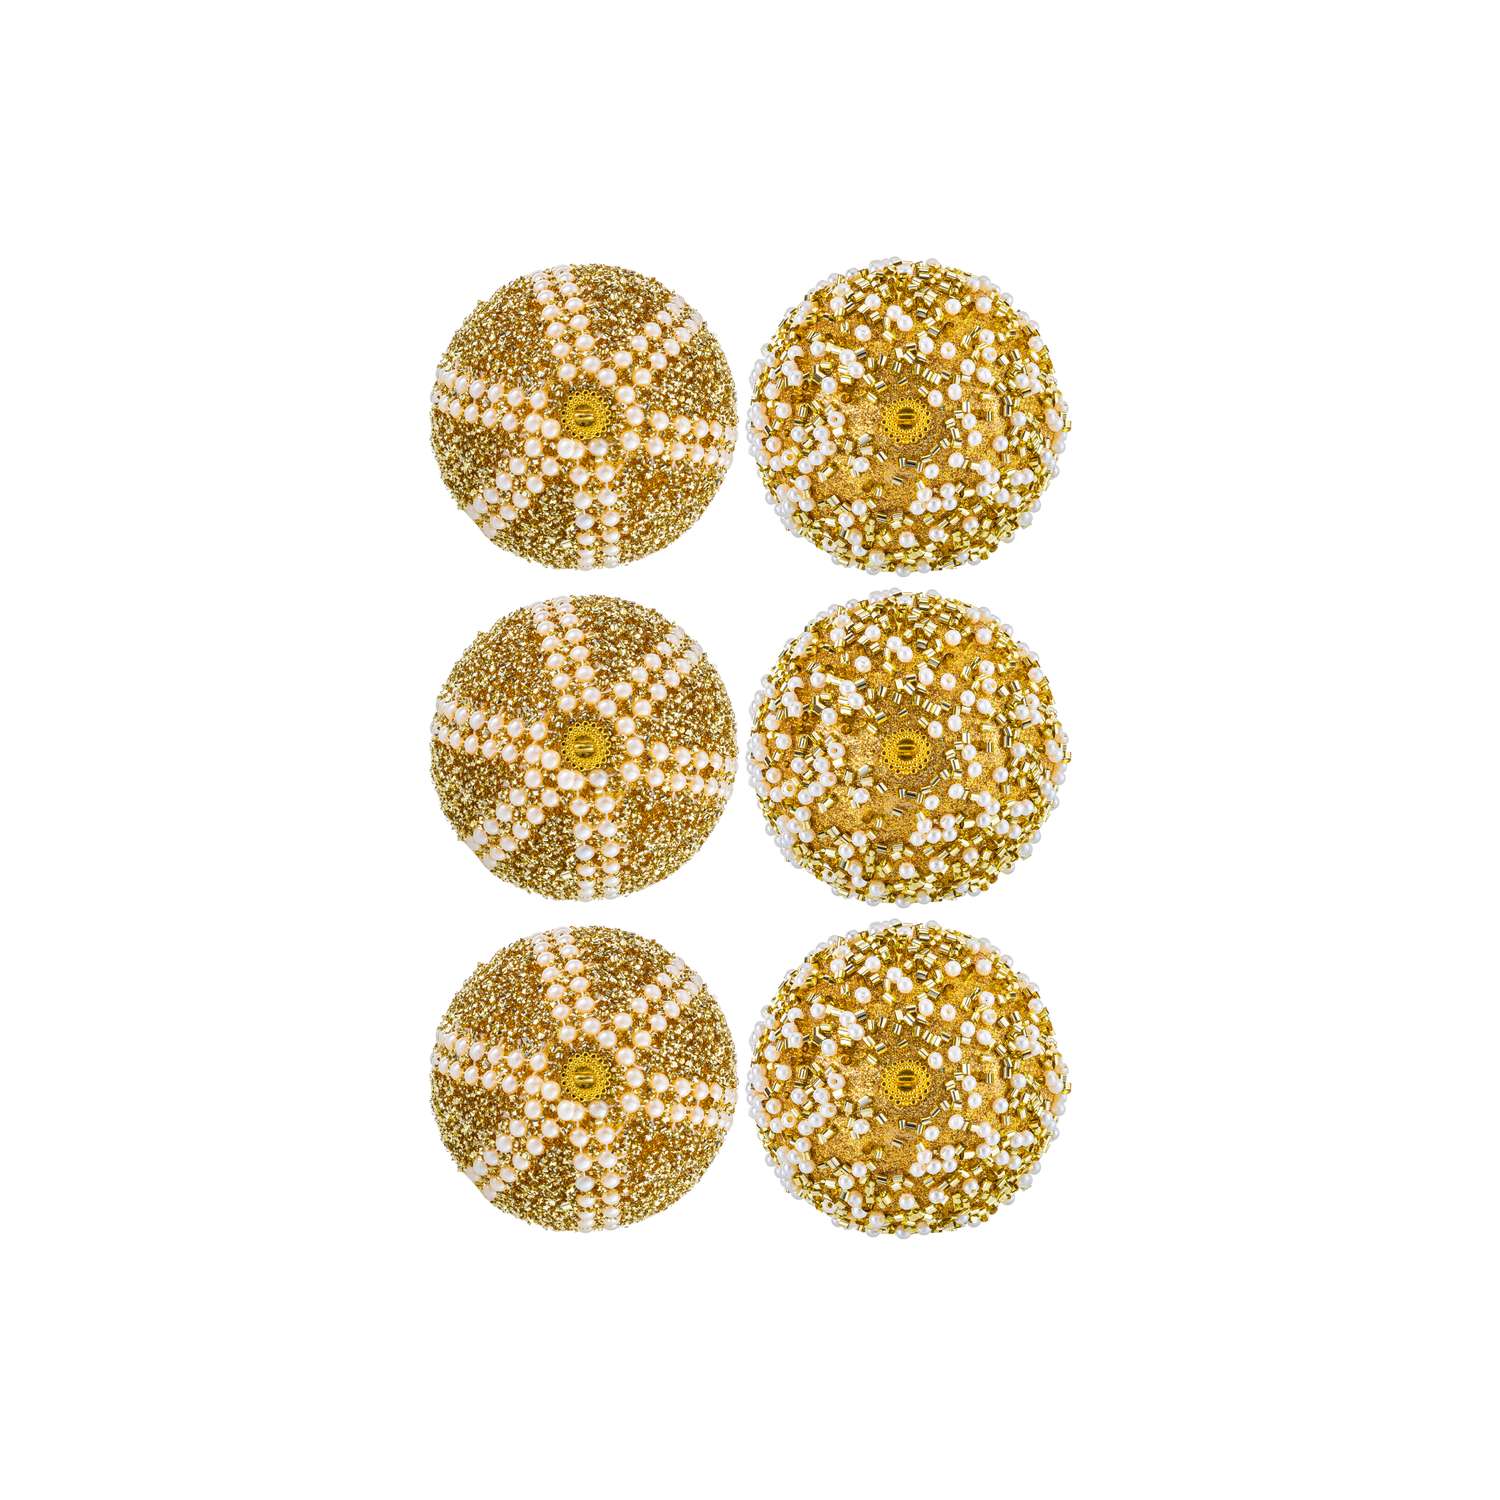 Набор Elan Gallery 6 новогодних шаров 8х8 см Жемчужины на золотом - фото 6